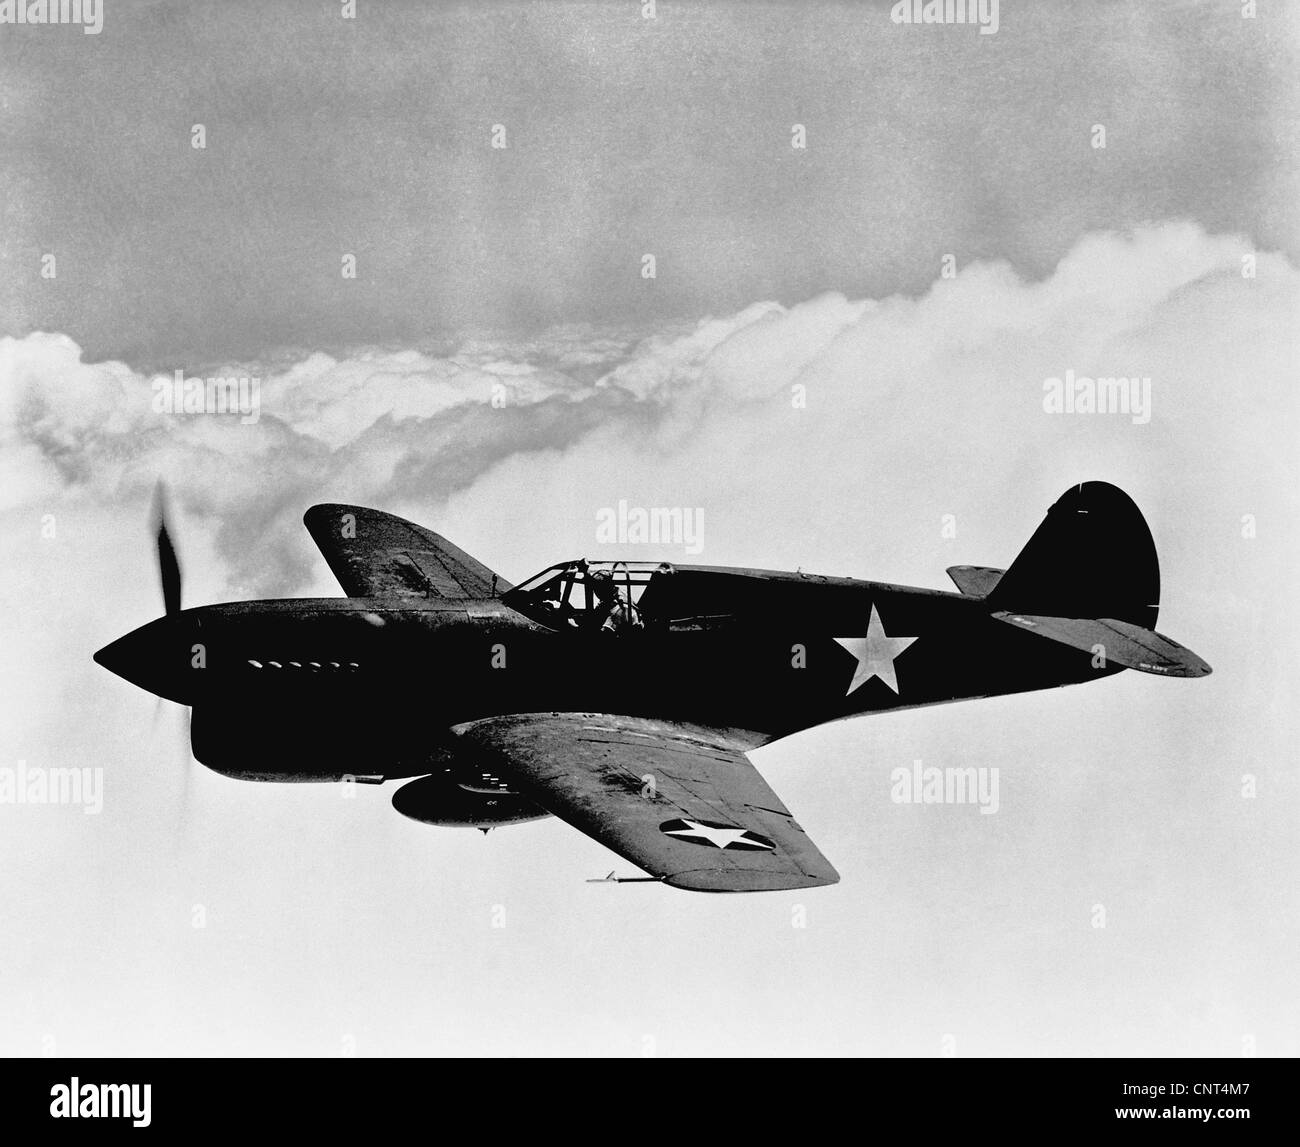 La Deuxième Guerre mondiale, vintage photo d'un avion de chasse P-40 volant au-dessus des nuages. Banque D'Images